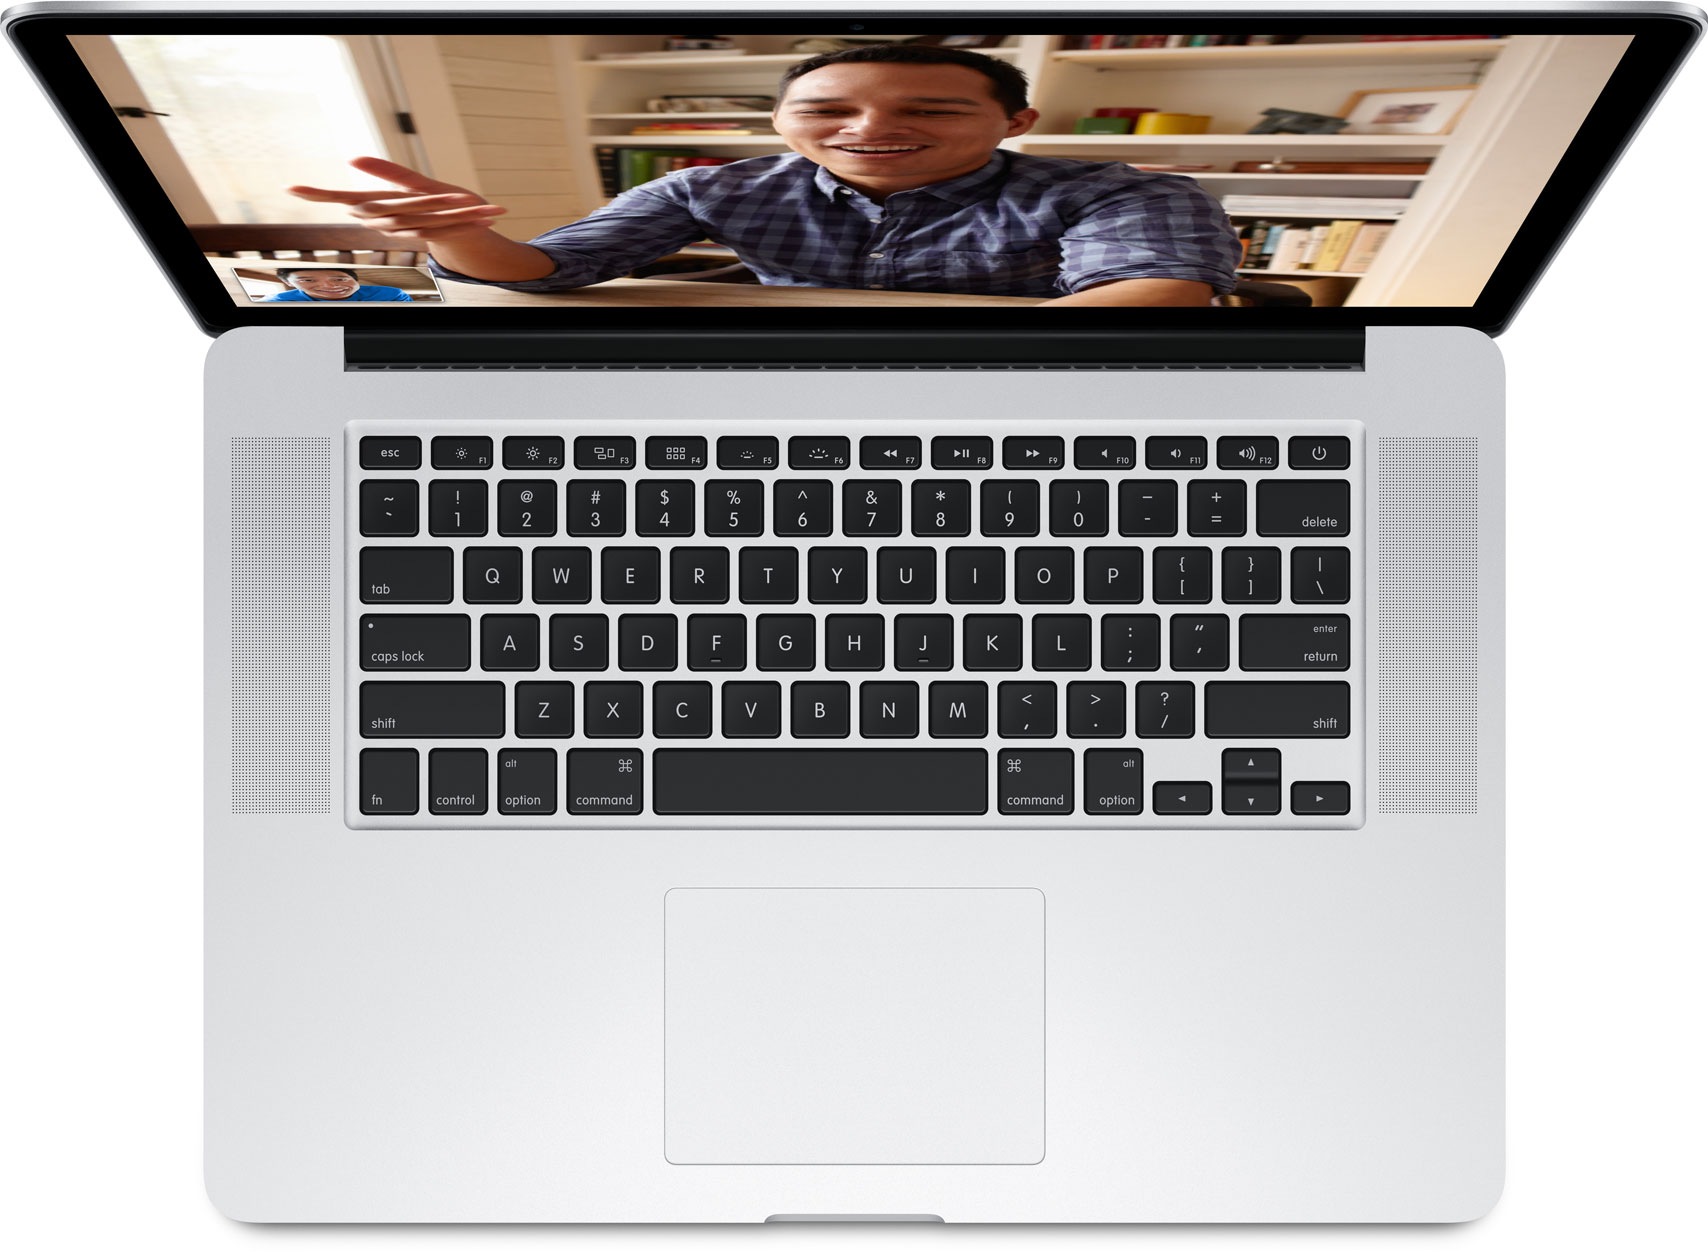 MacBook Pro dengan tampilan Retina dilihat dari atas